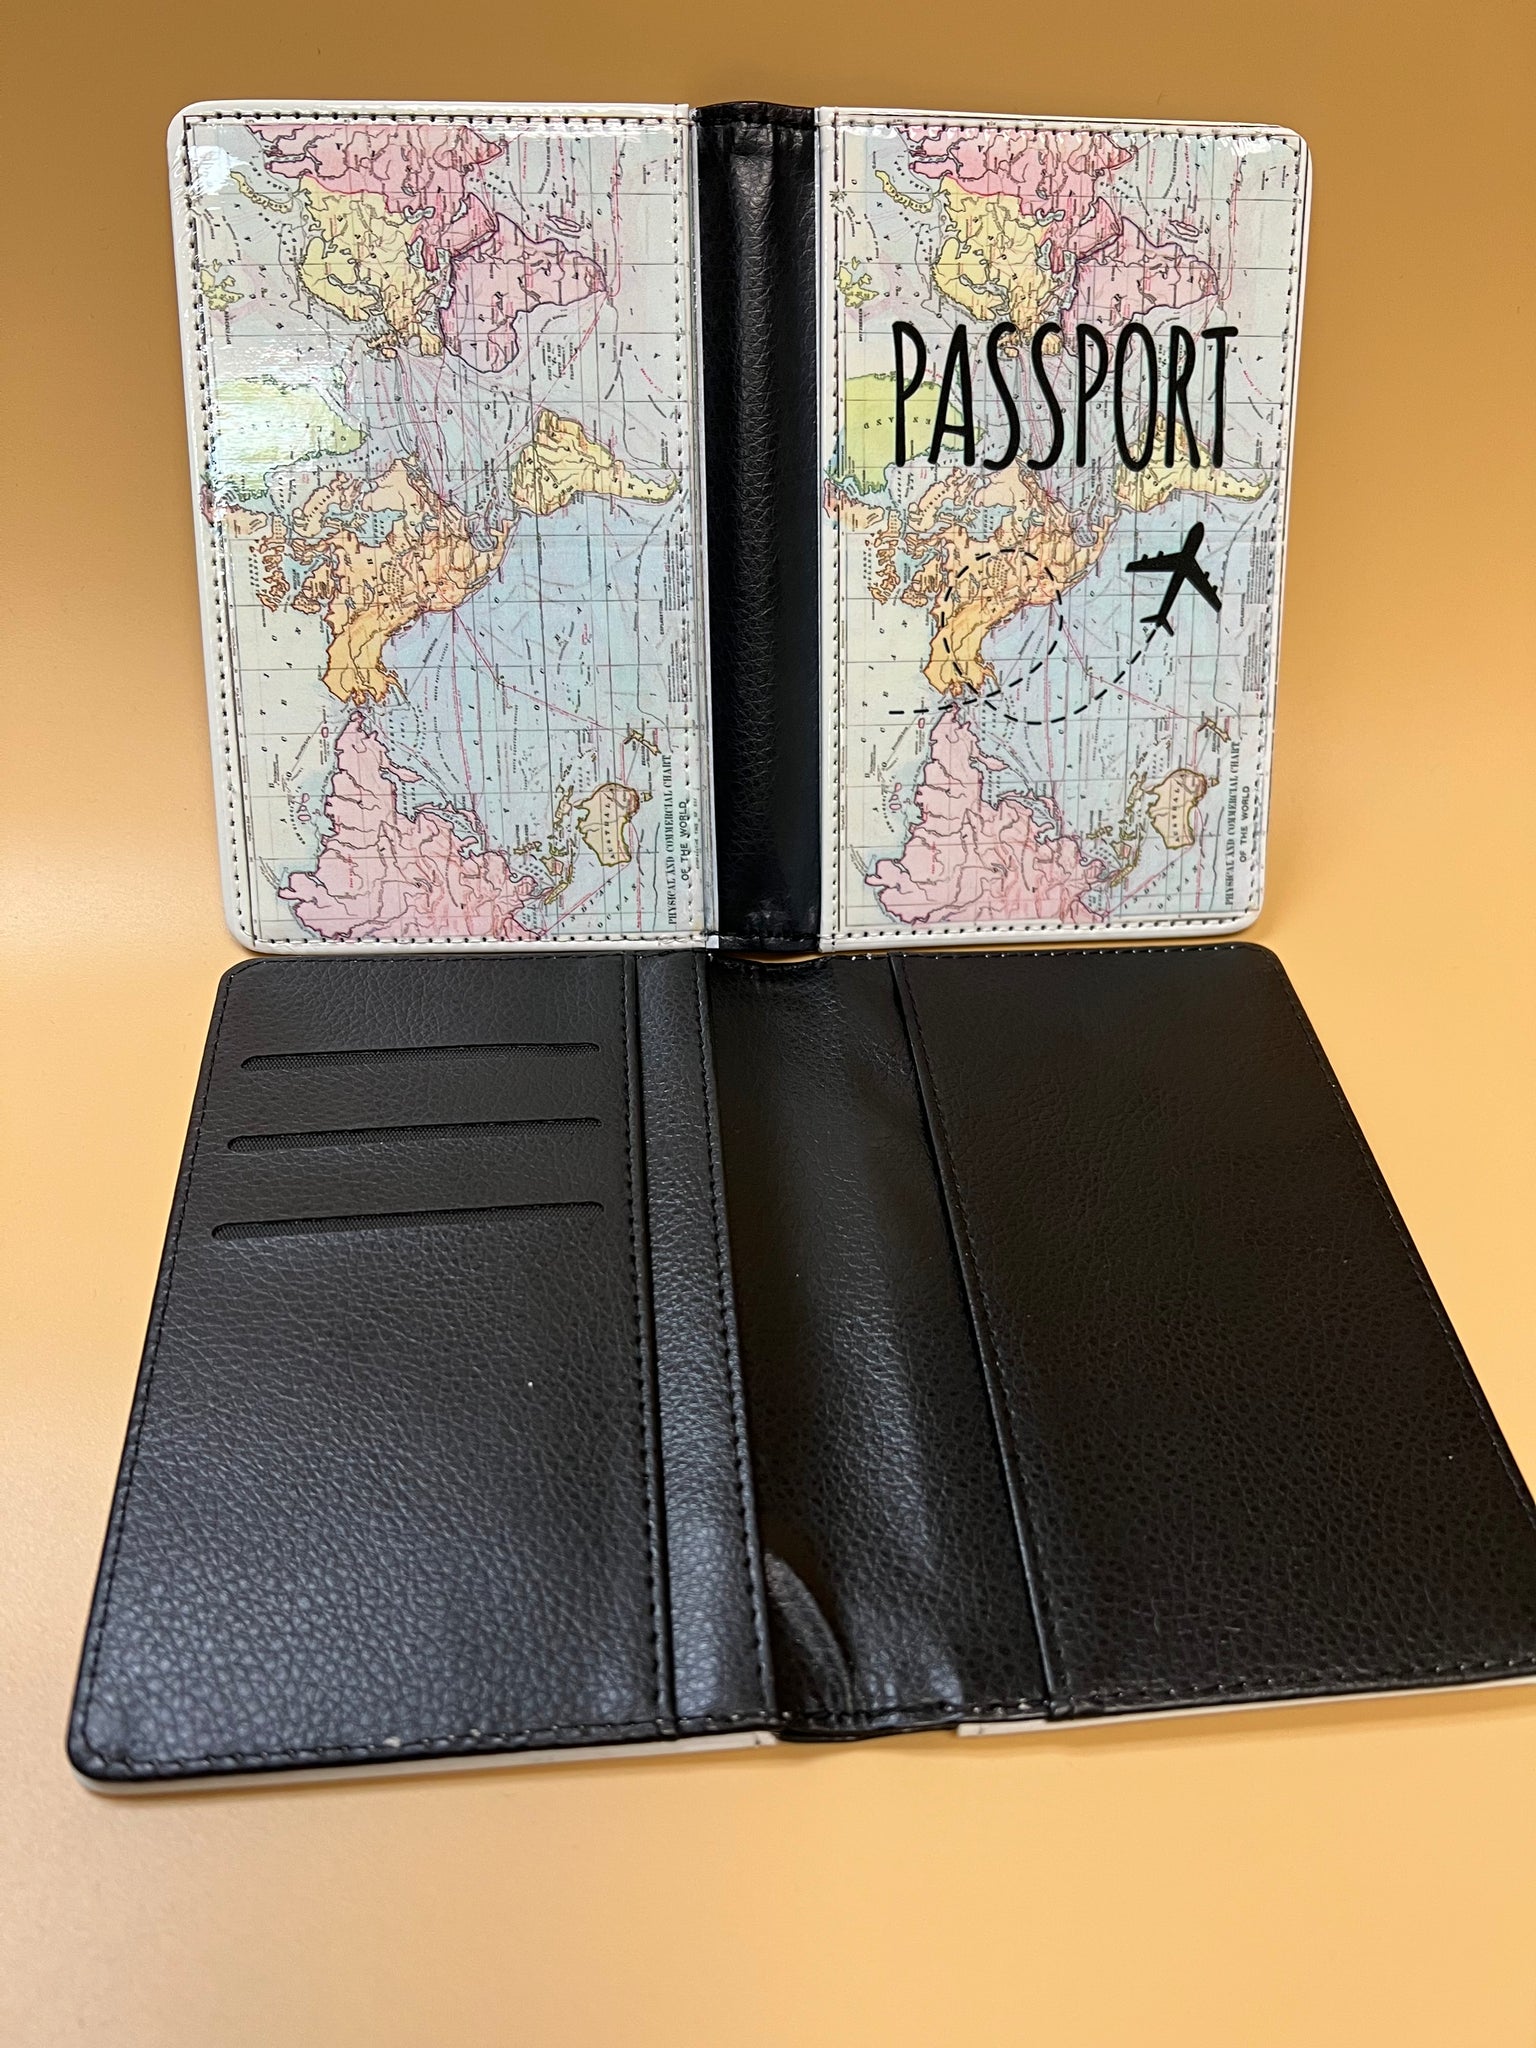 lv passport holder inside